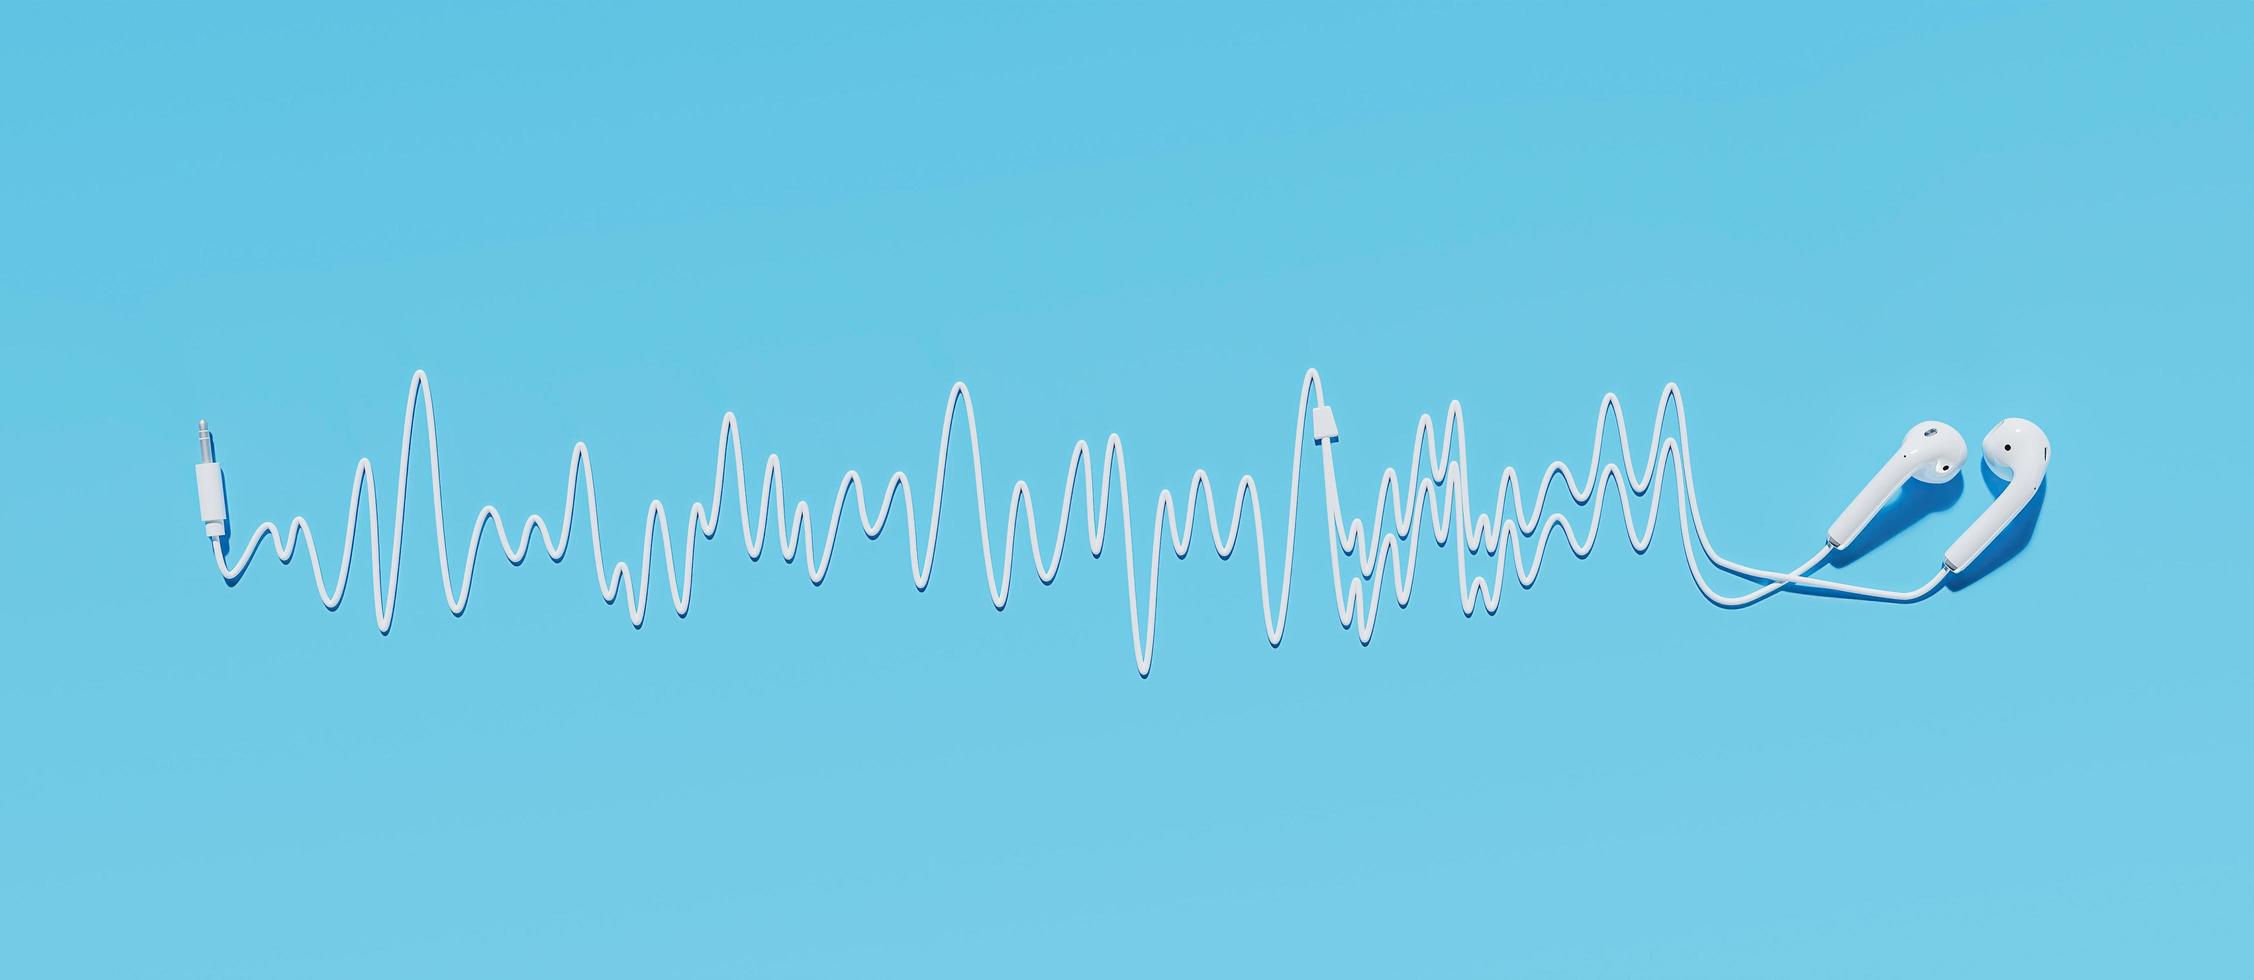 fones de ouvido com cabo fazendo uma onda sonora em um fundo azul, renderização em 3D foto